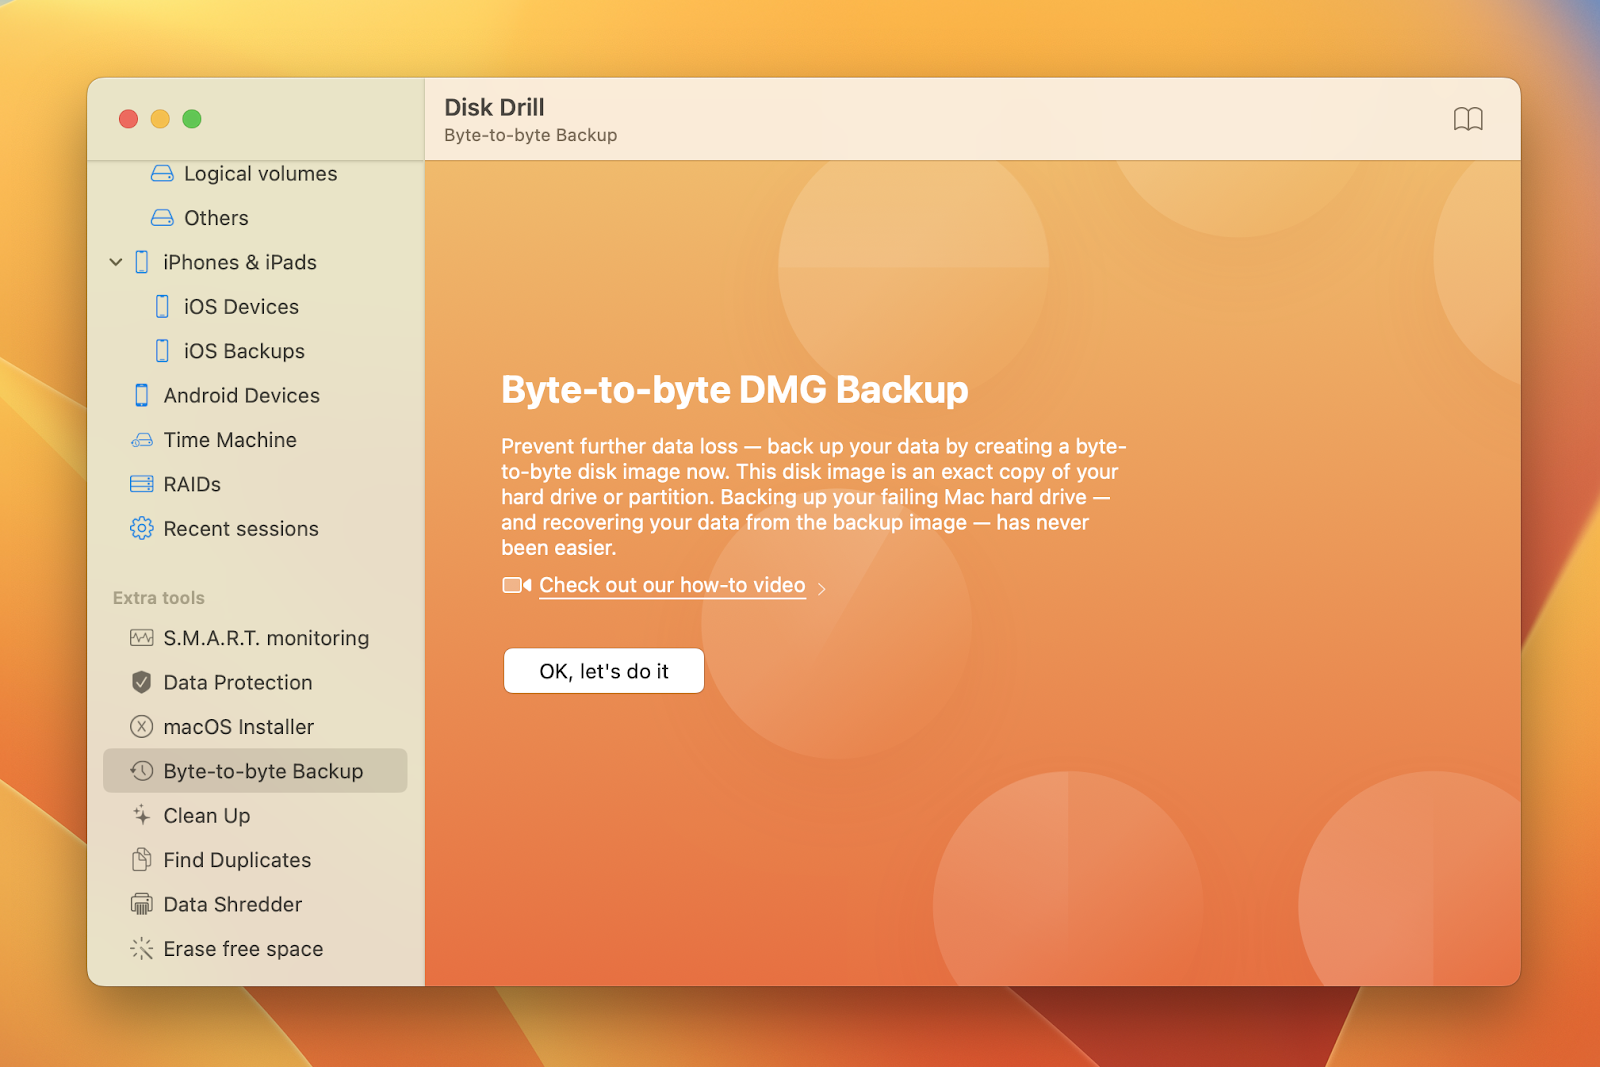 Byte-to-byte DMG Backup